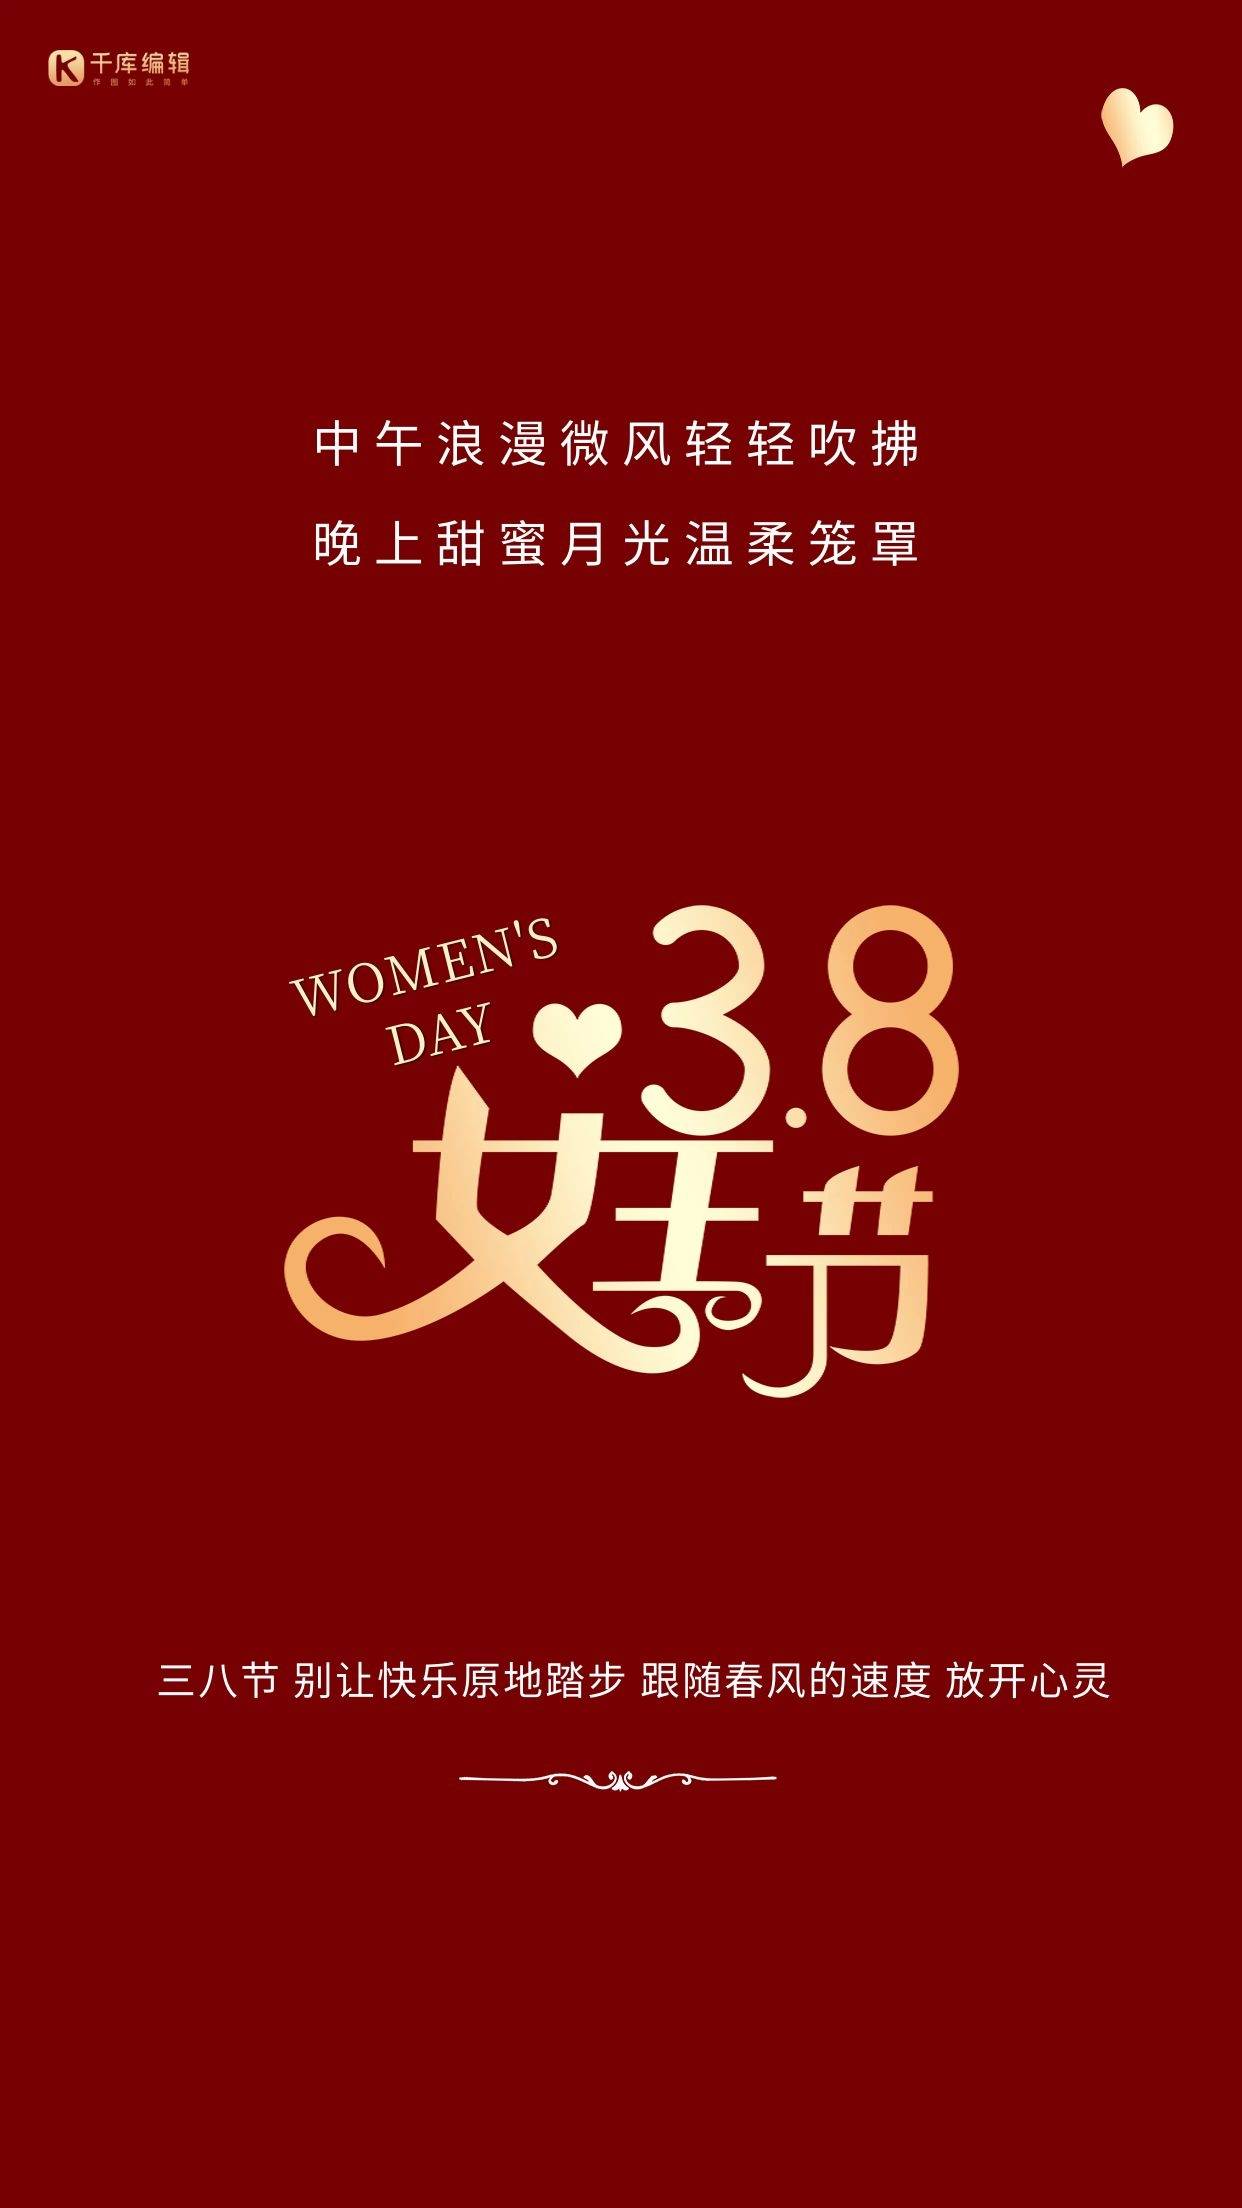 38妇女节公司文案图片